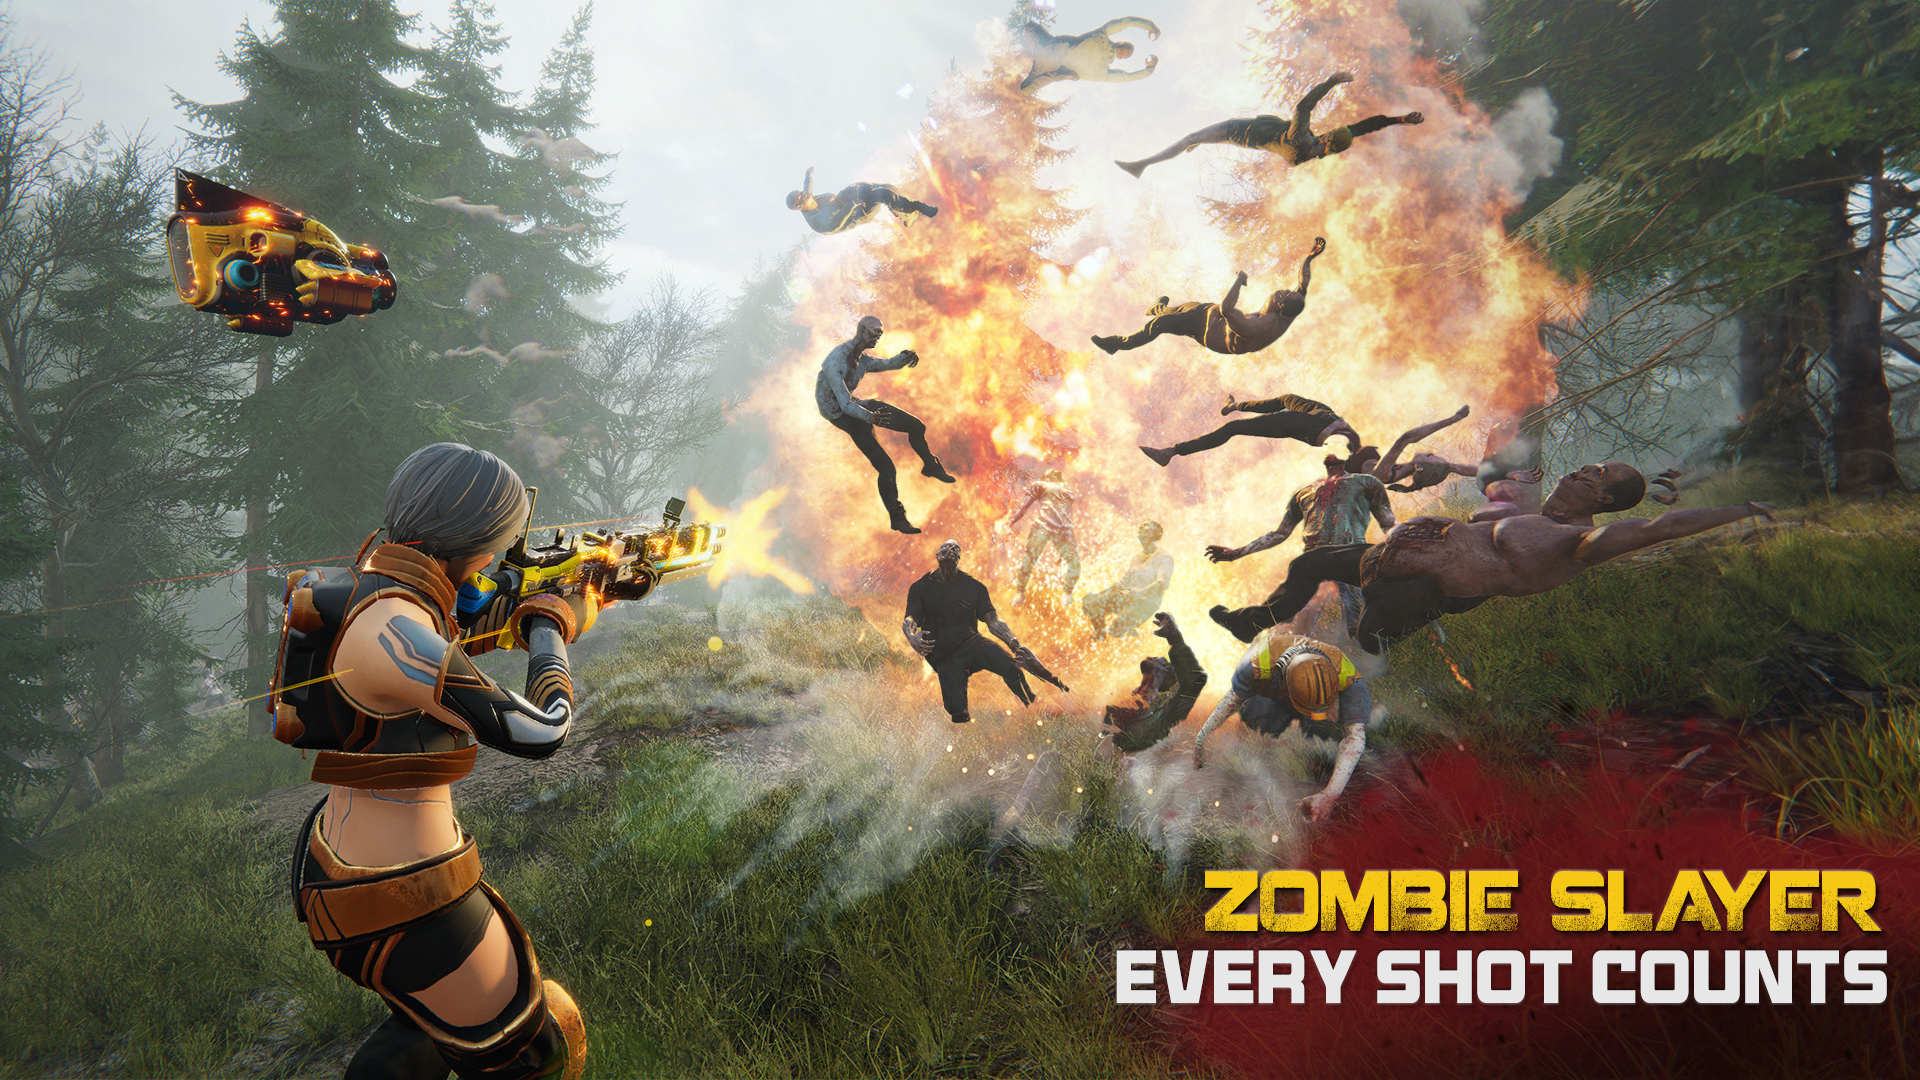 Zombie Shooter 3D 게임 스크린 샷